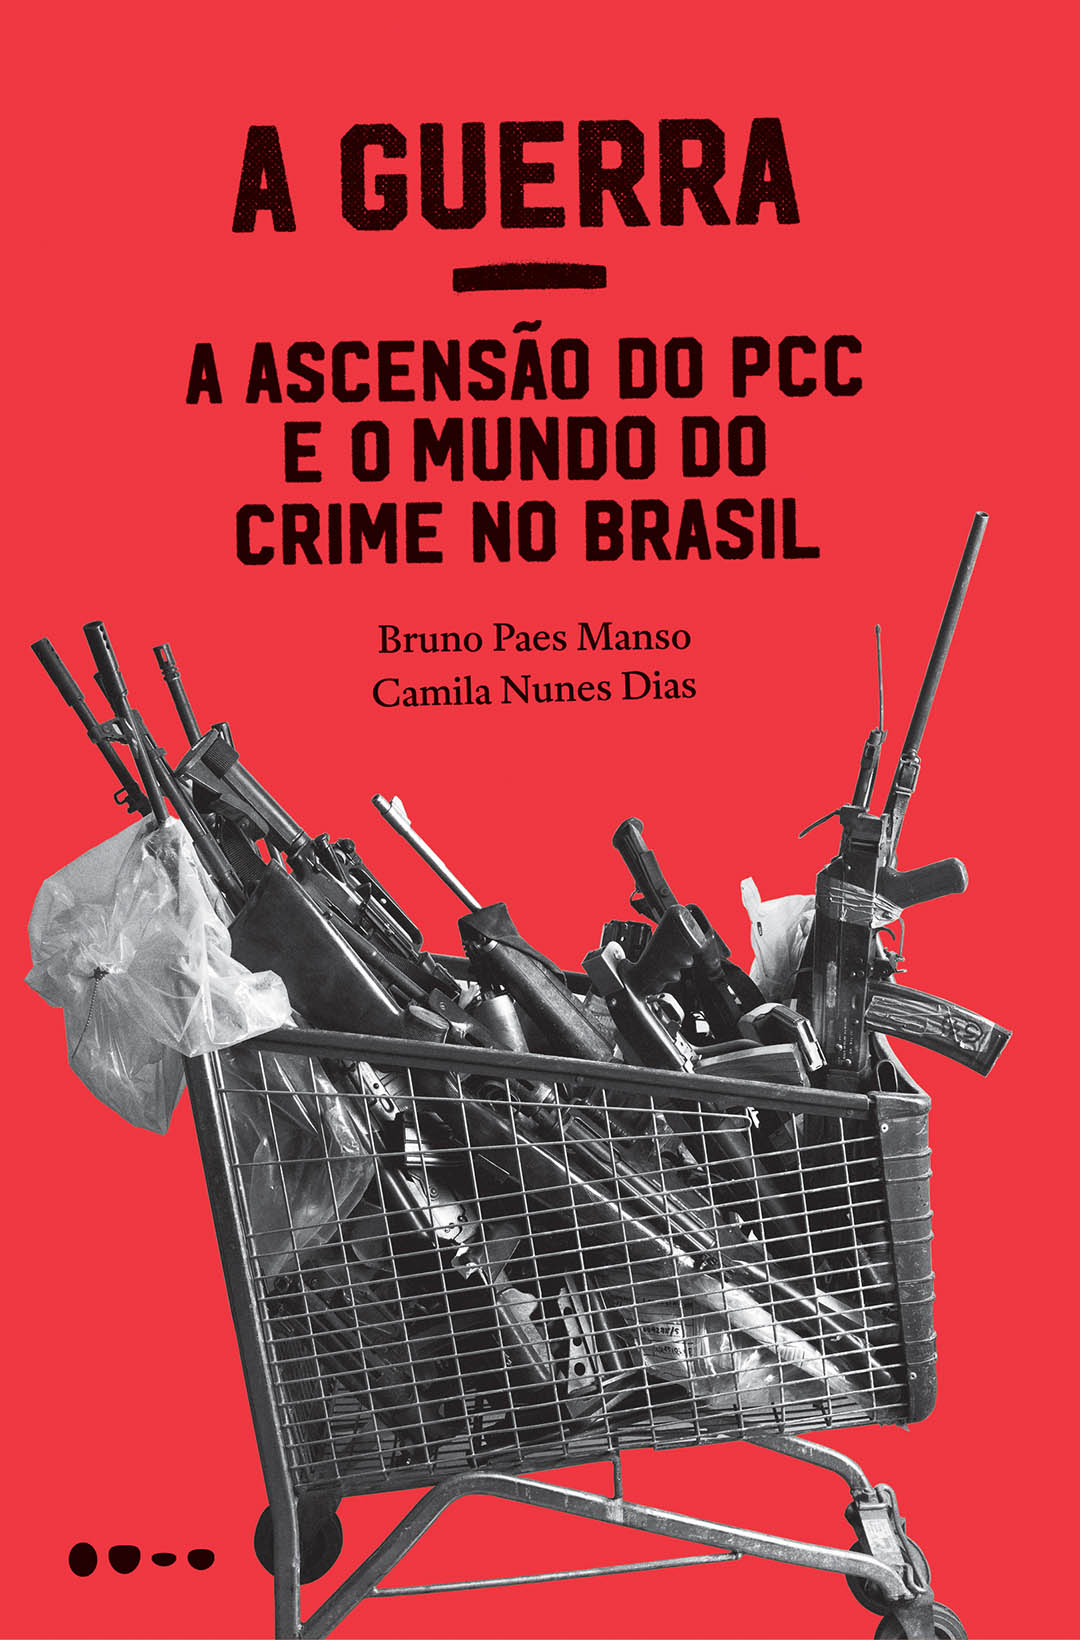 A Guerra - A Ascensão do PCC e o Mundo do Crime no Brasil - Bruno Paes Manso, Camila Nunes Dias  - LiteraRUA